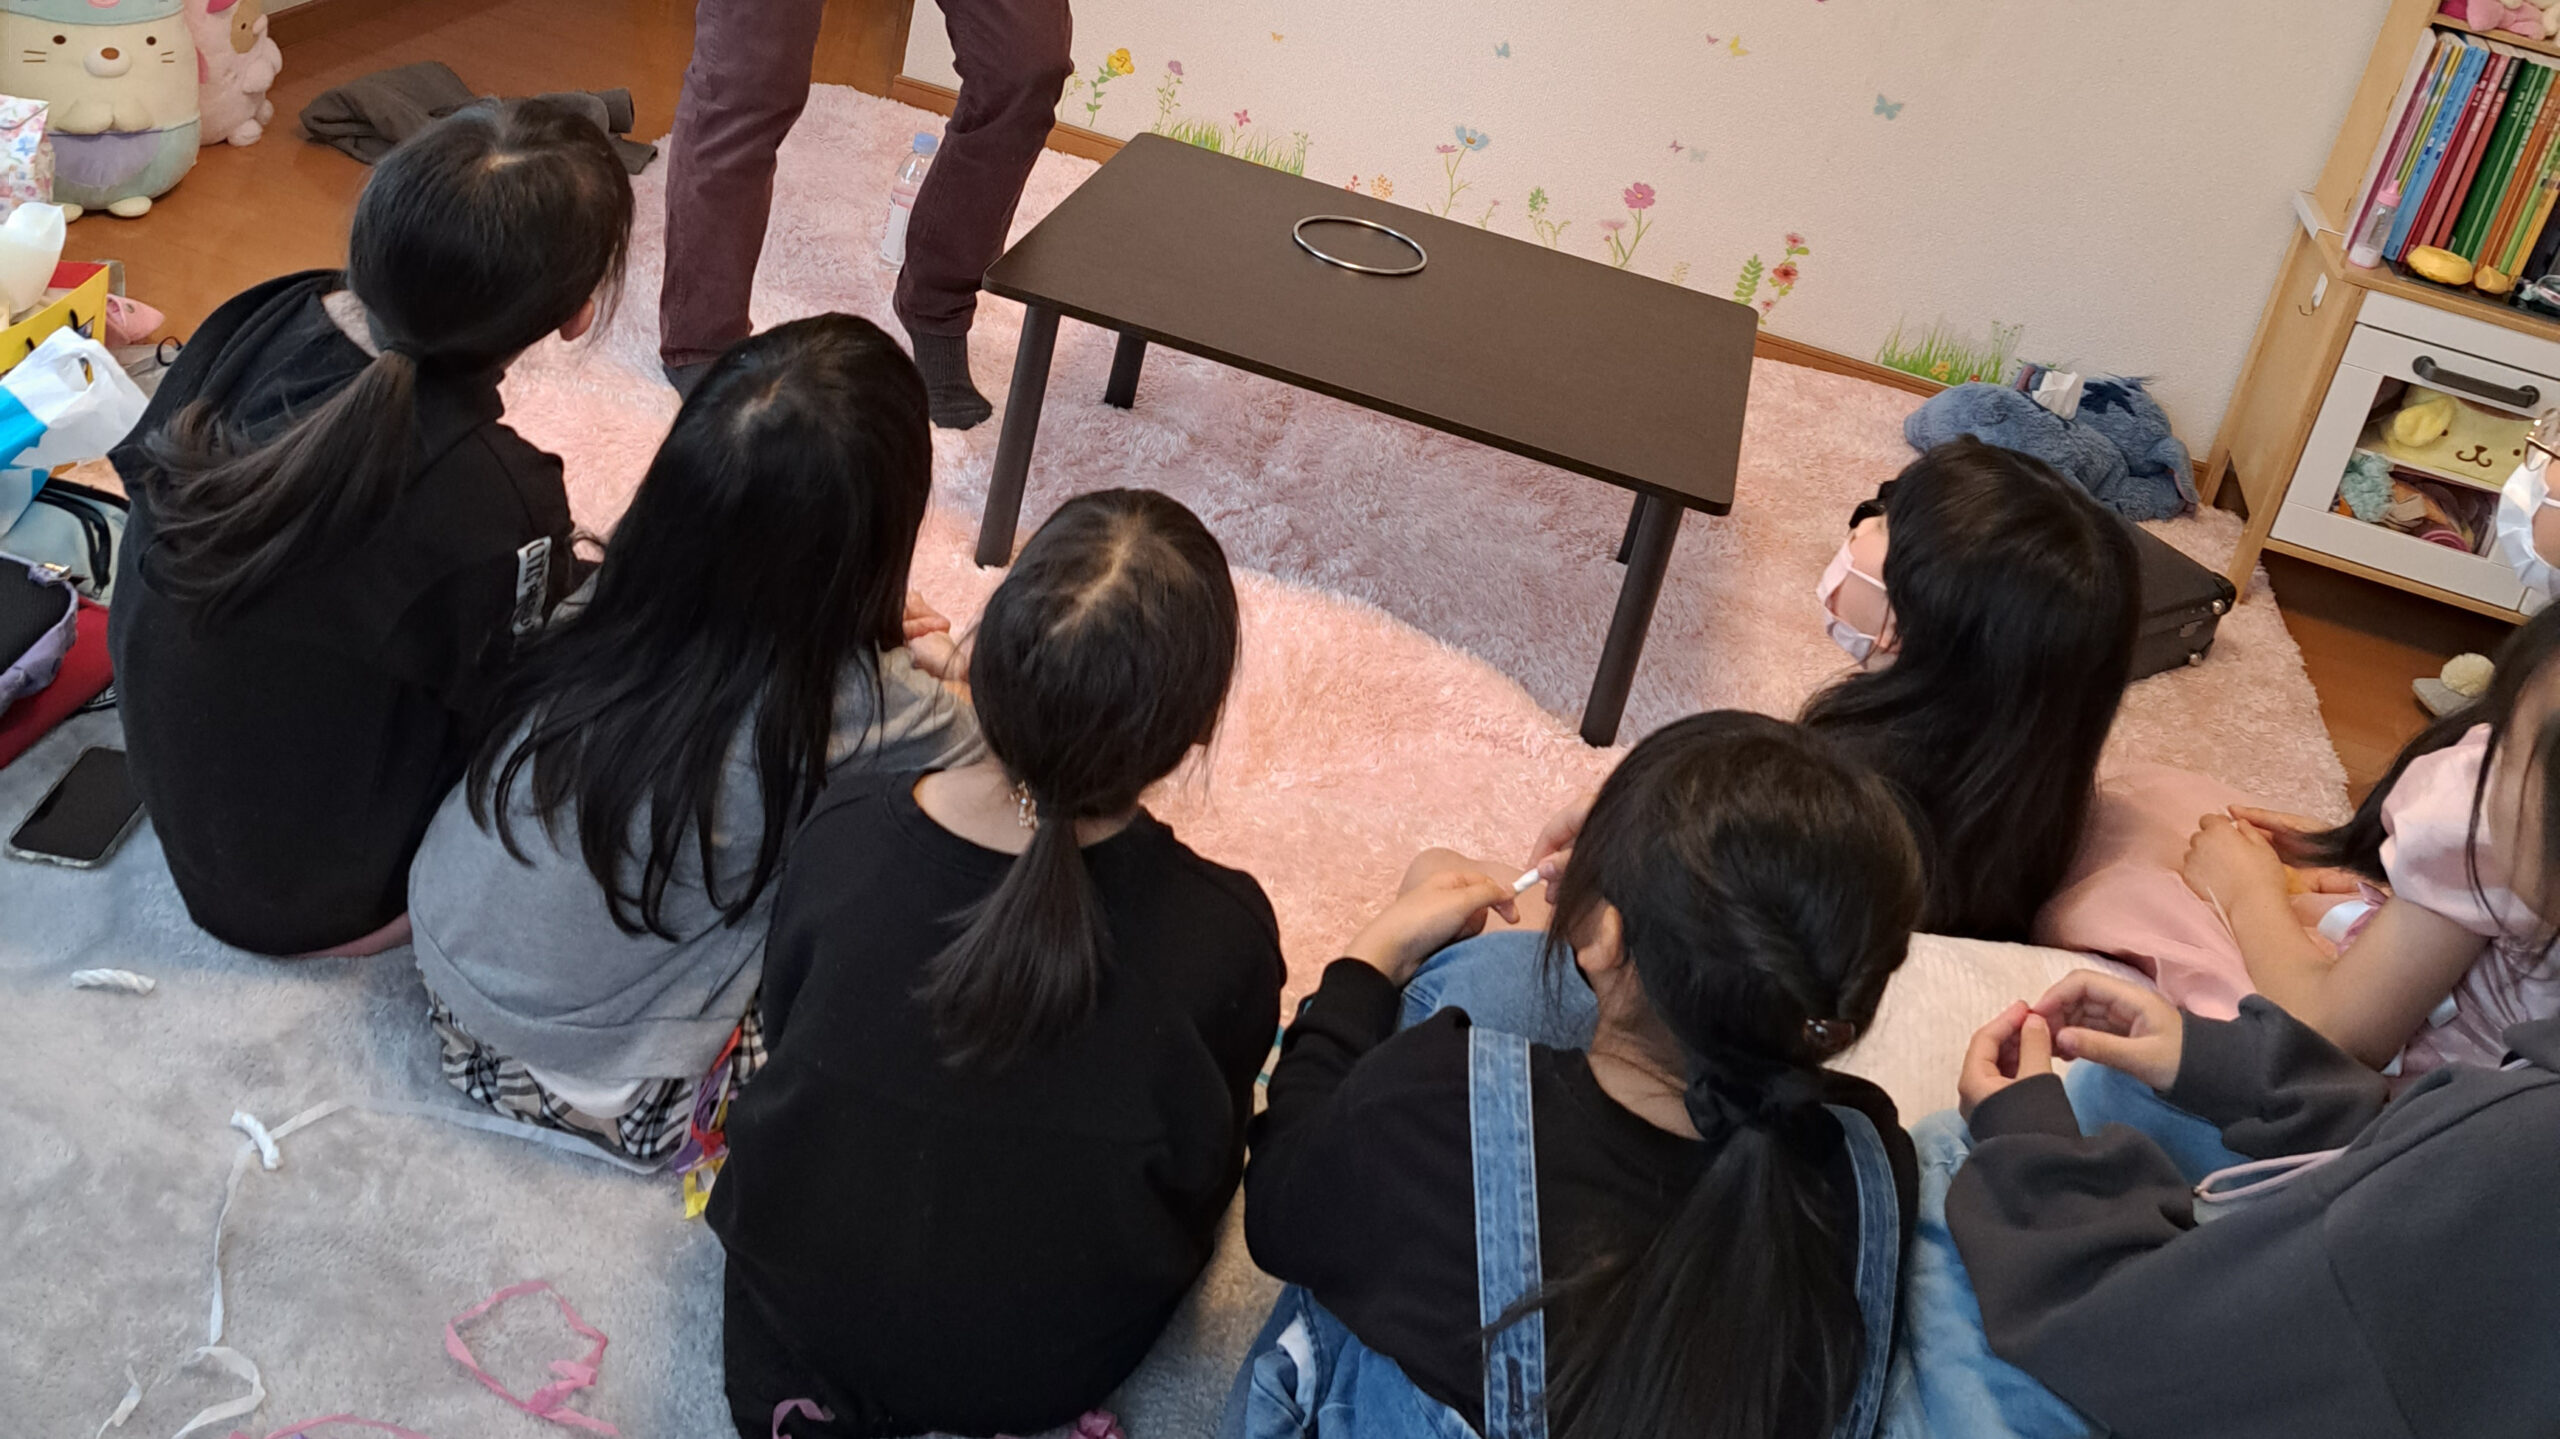 マジックショーをみる子供達 10歳娘お誕生日会でマジックショー 横浜市, 神奈川県